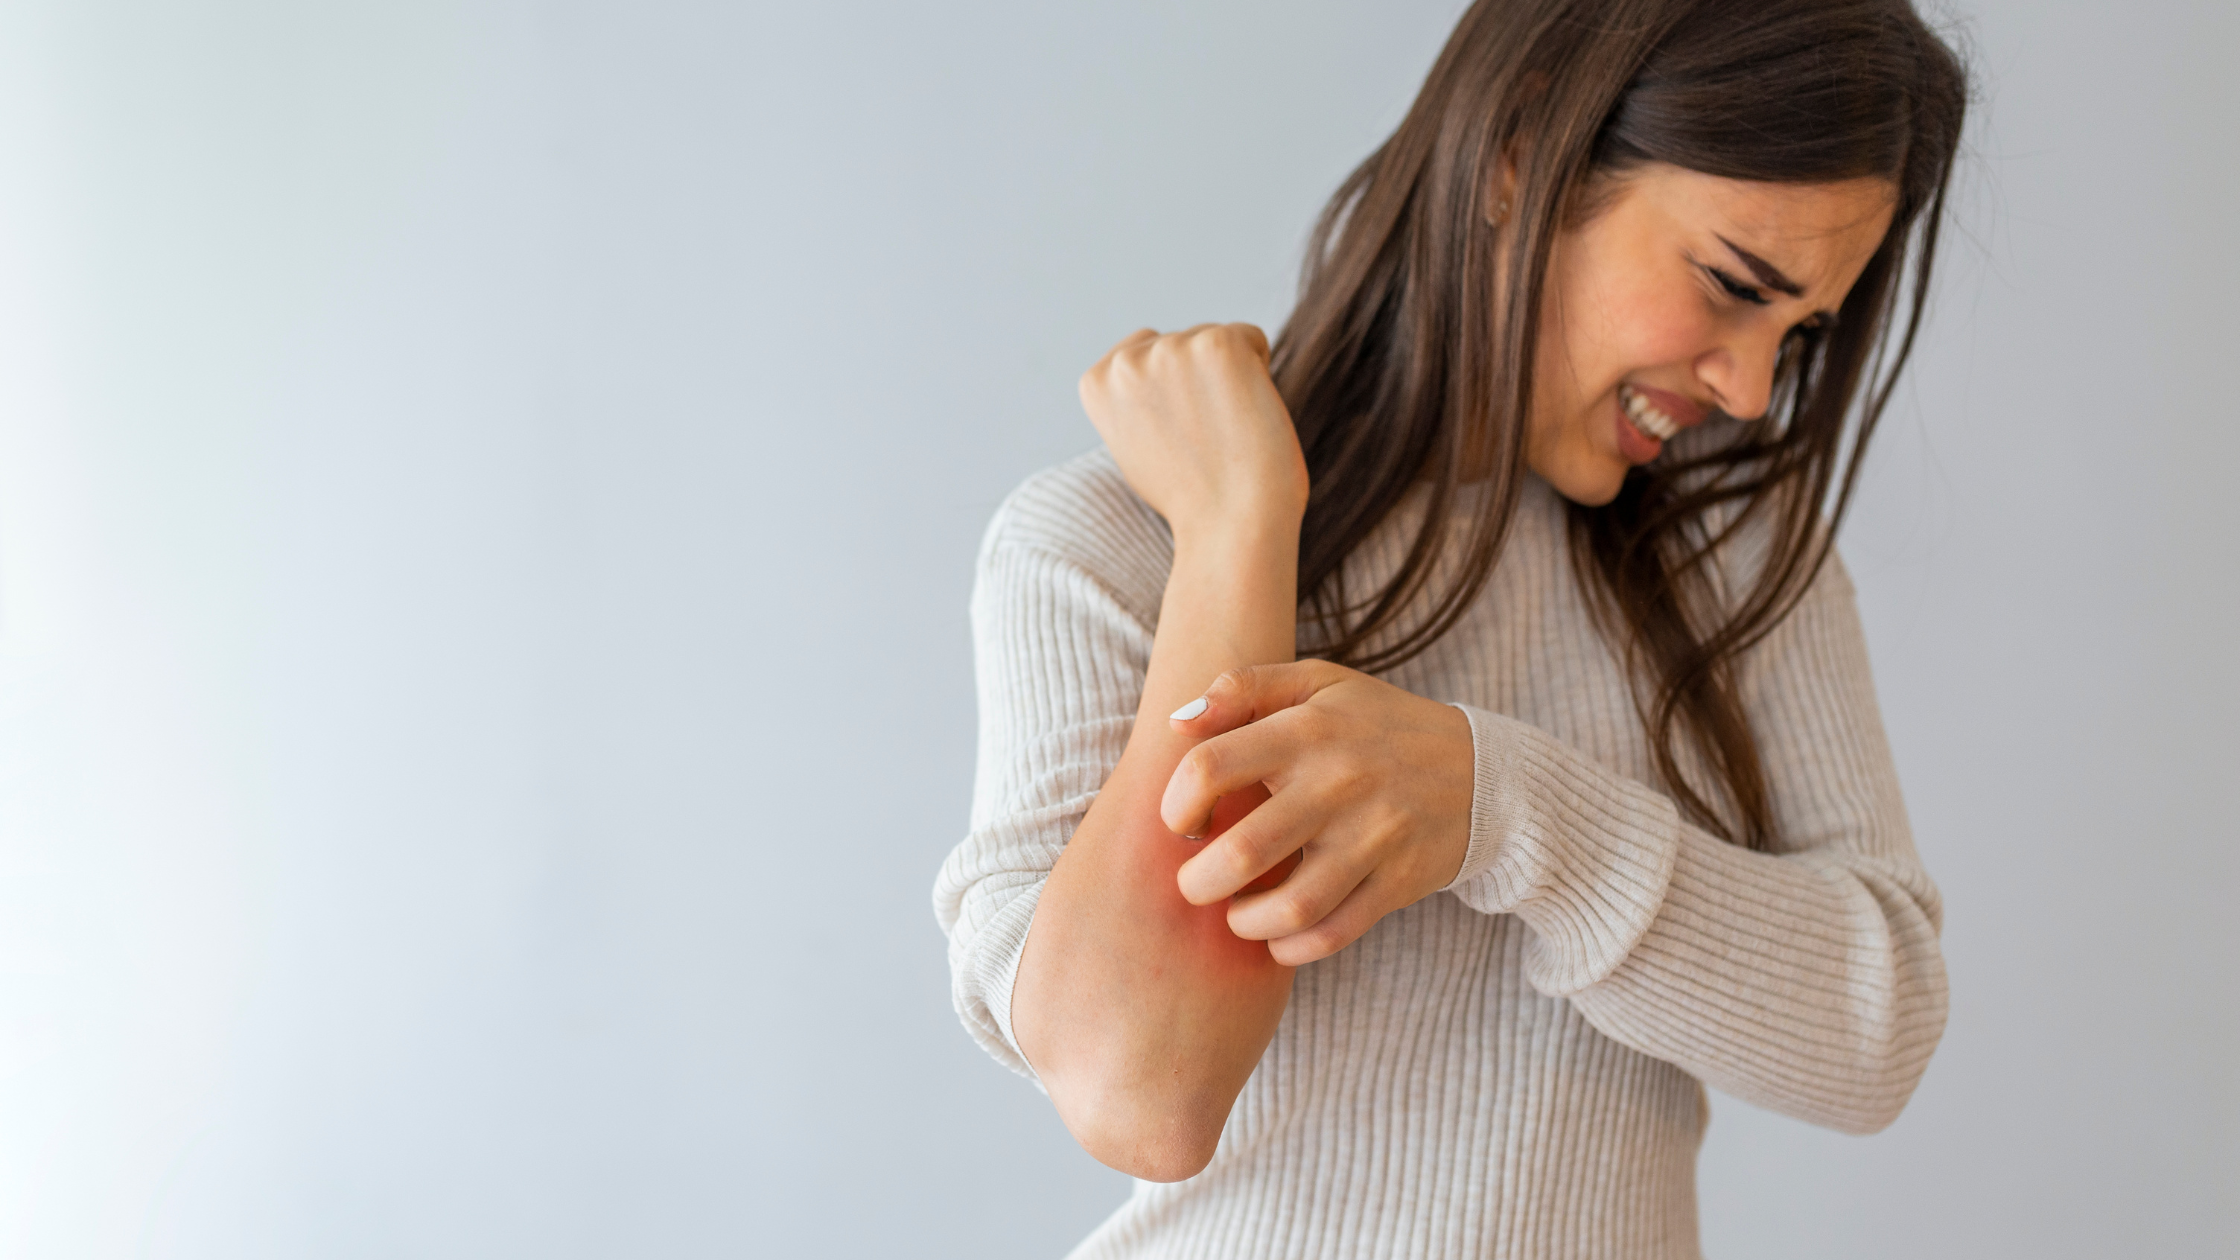 Women reacting to irritated sensitive skin